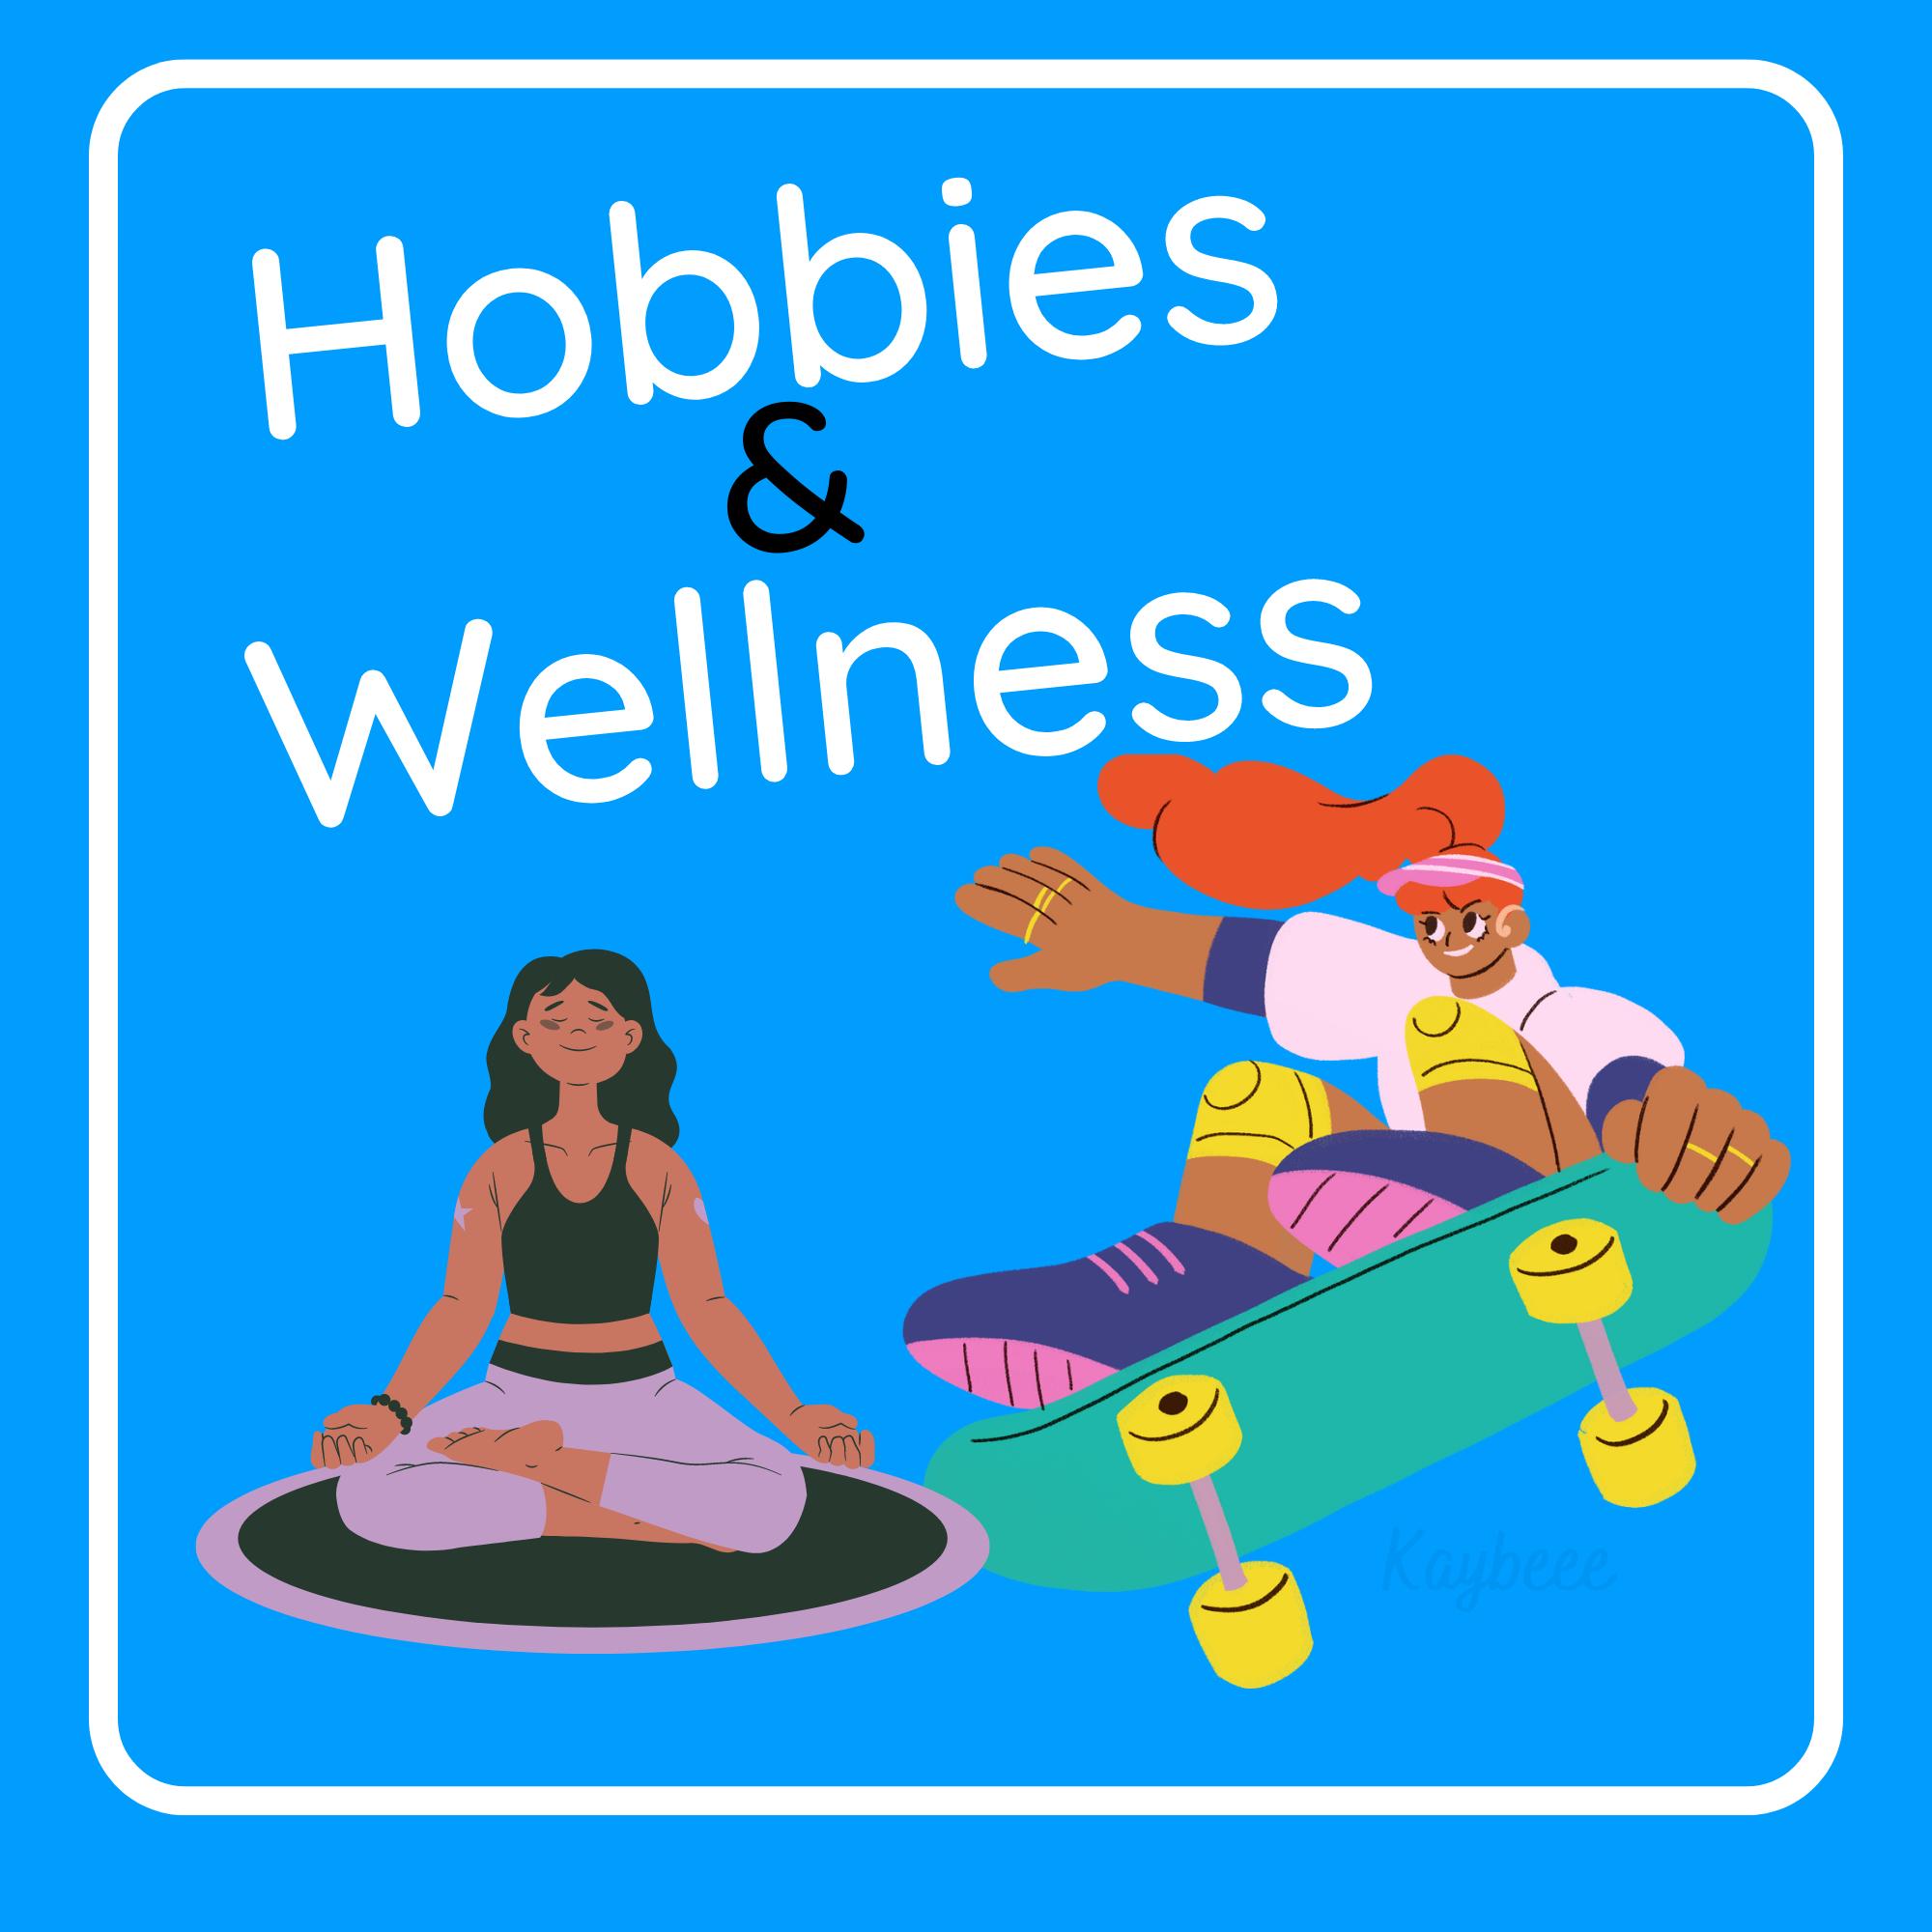 Hobbies & Wellness